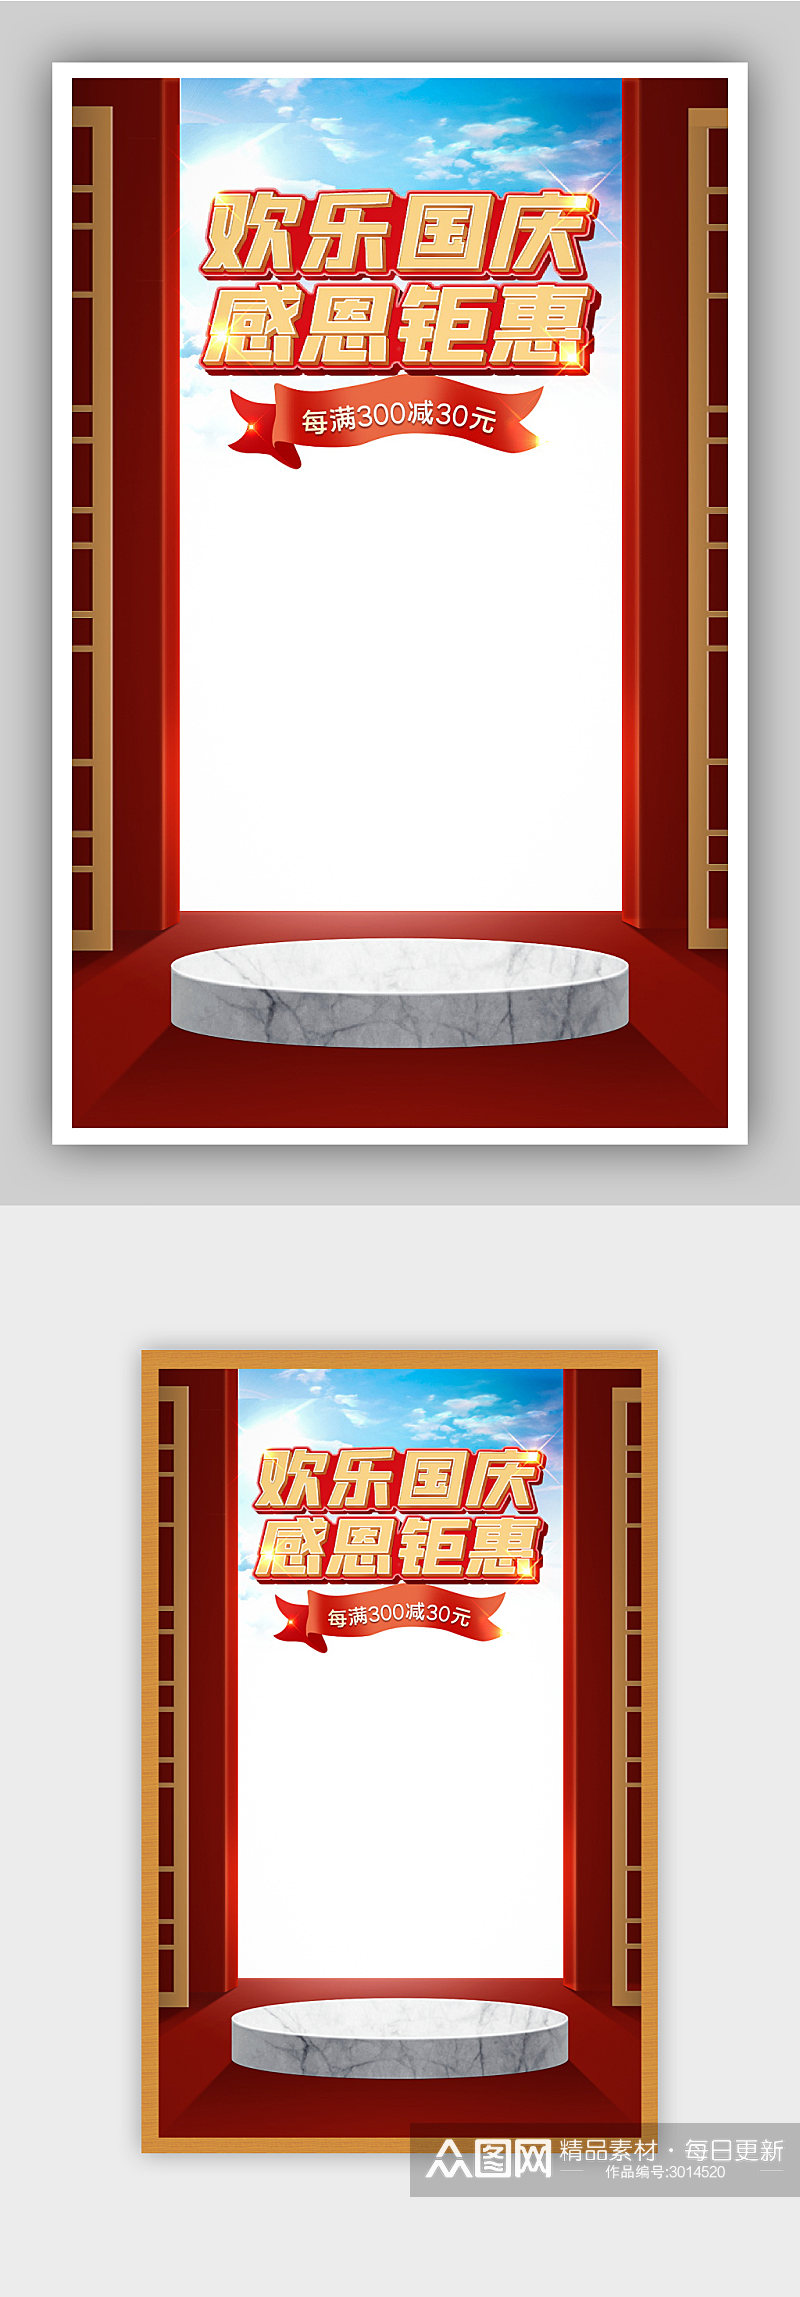 红色中国传统节日国庆节促销海报素材